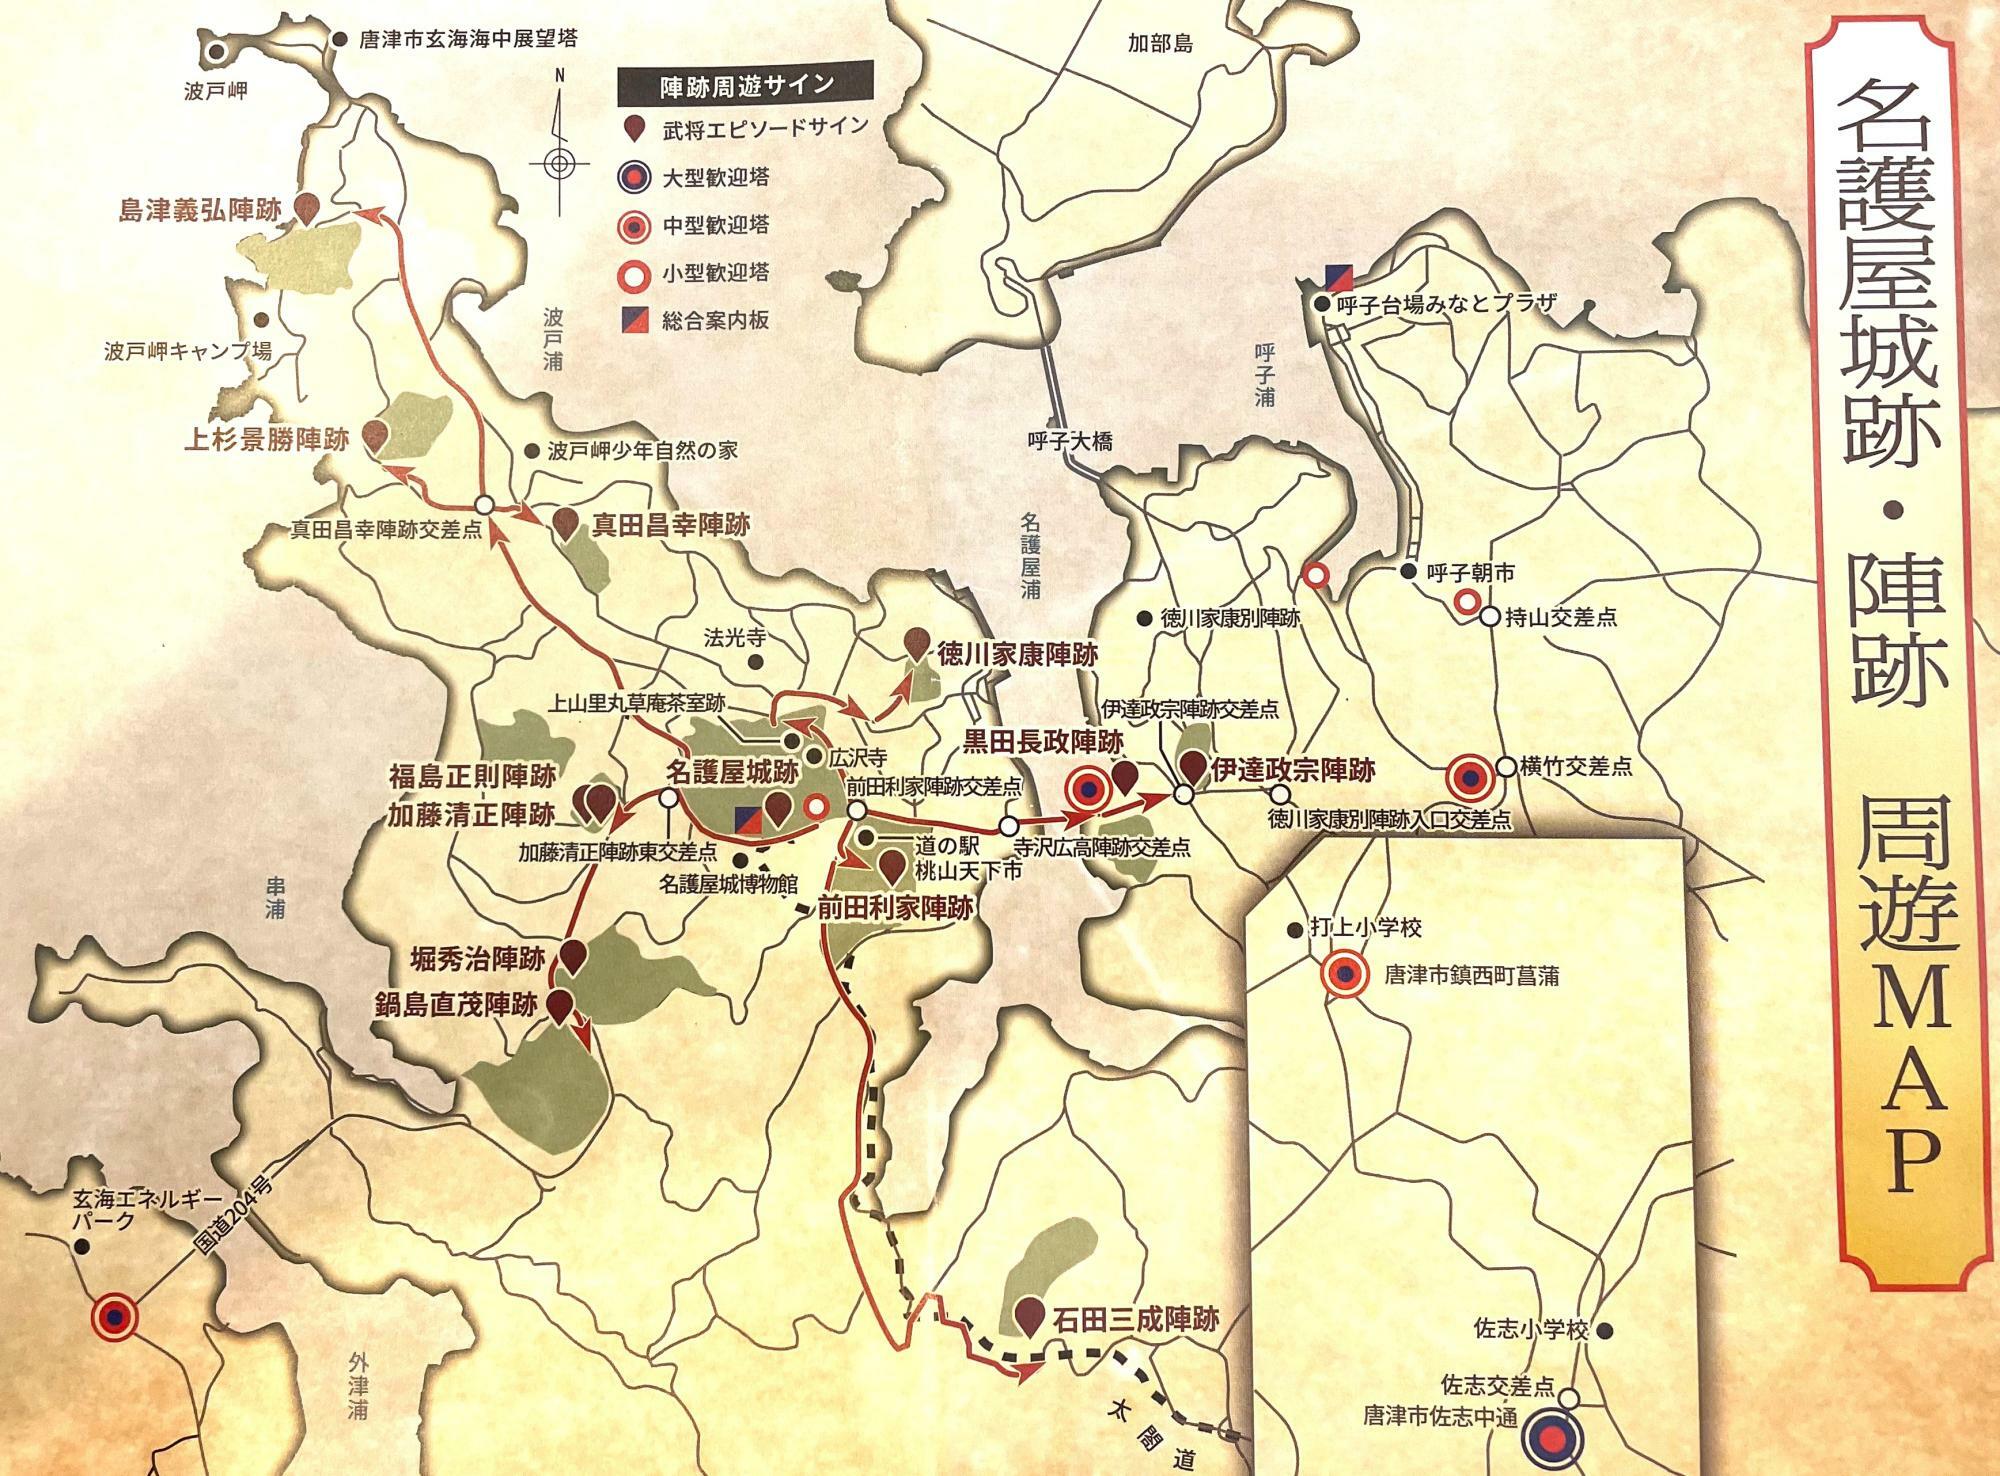 名護屋城跡・陣跡のマップ。武将エピソードサインの位置も明示。